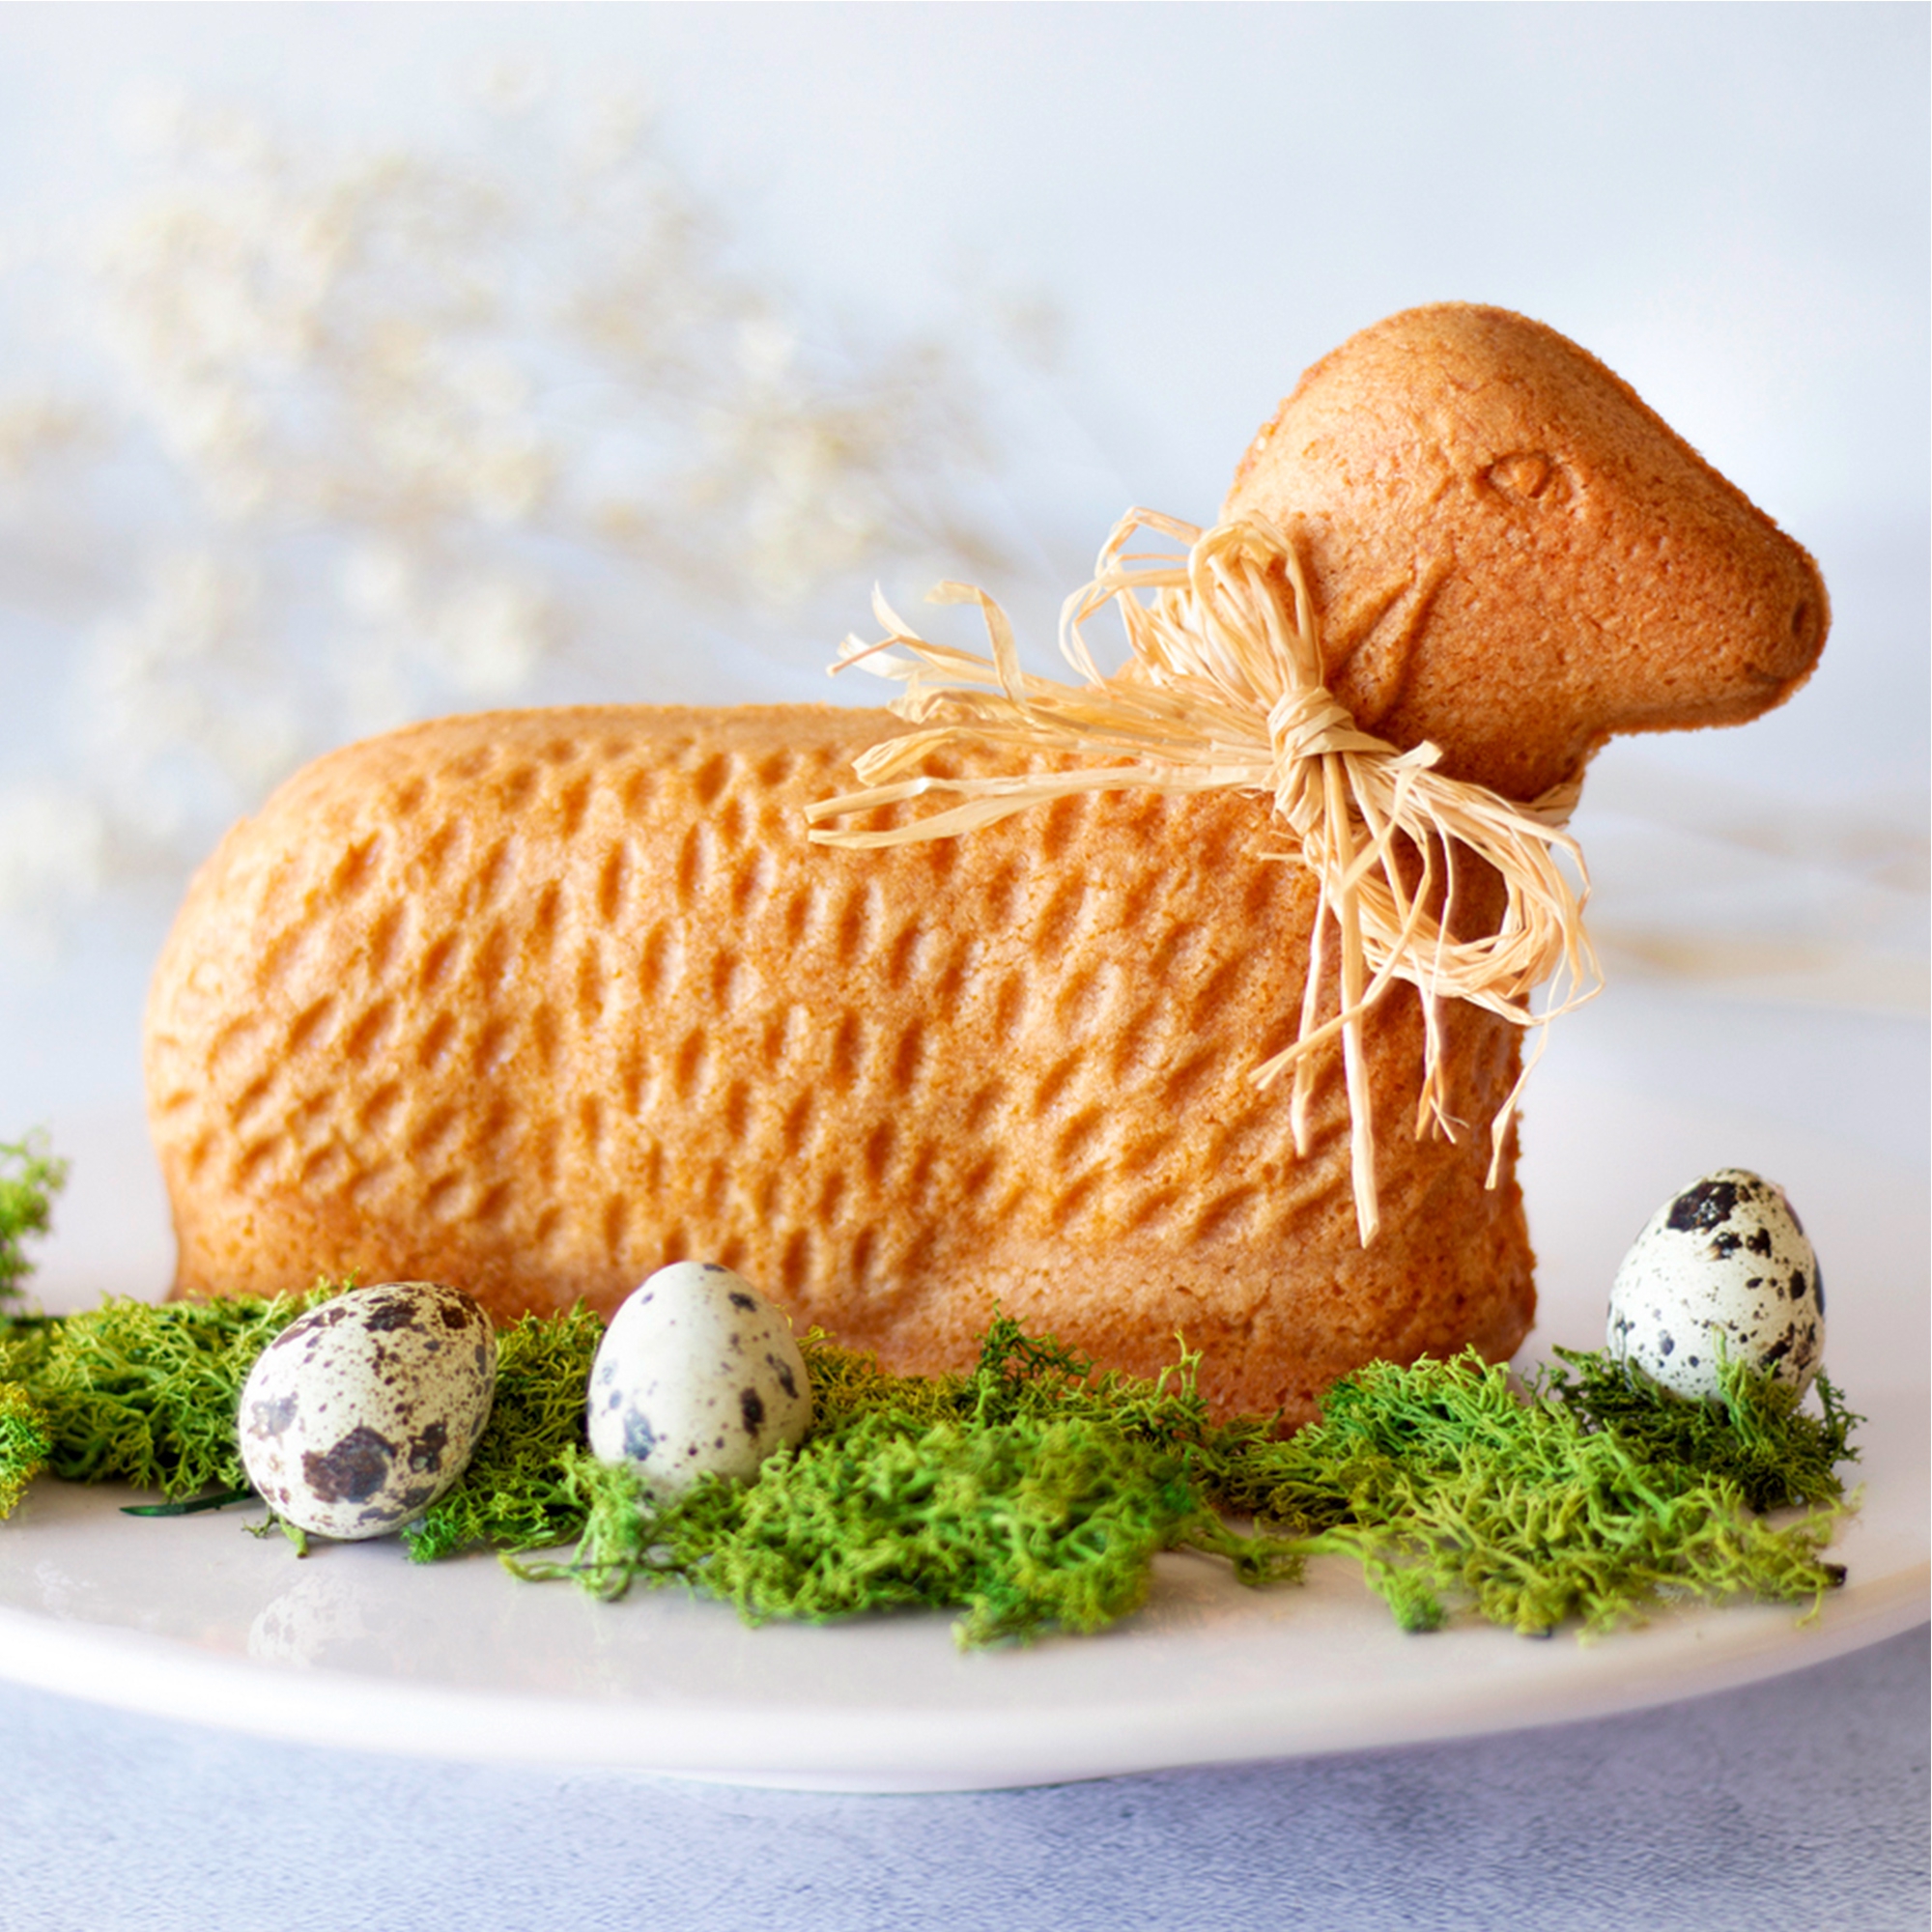 Städter - 3D baking tin - Easter lamb